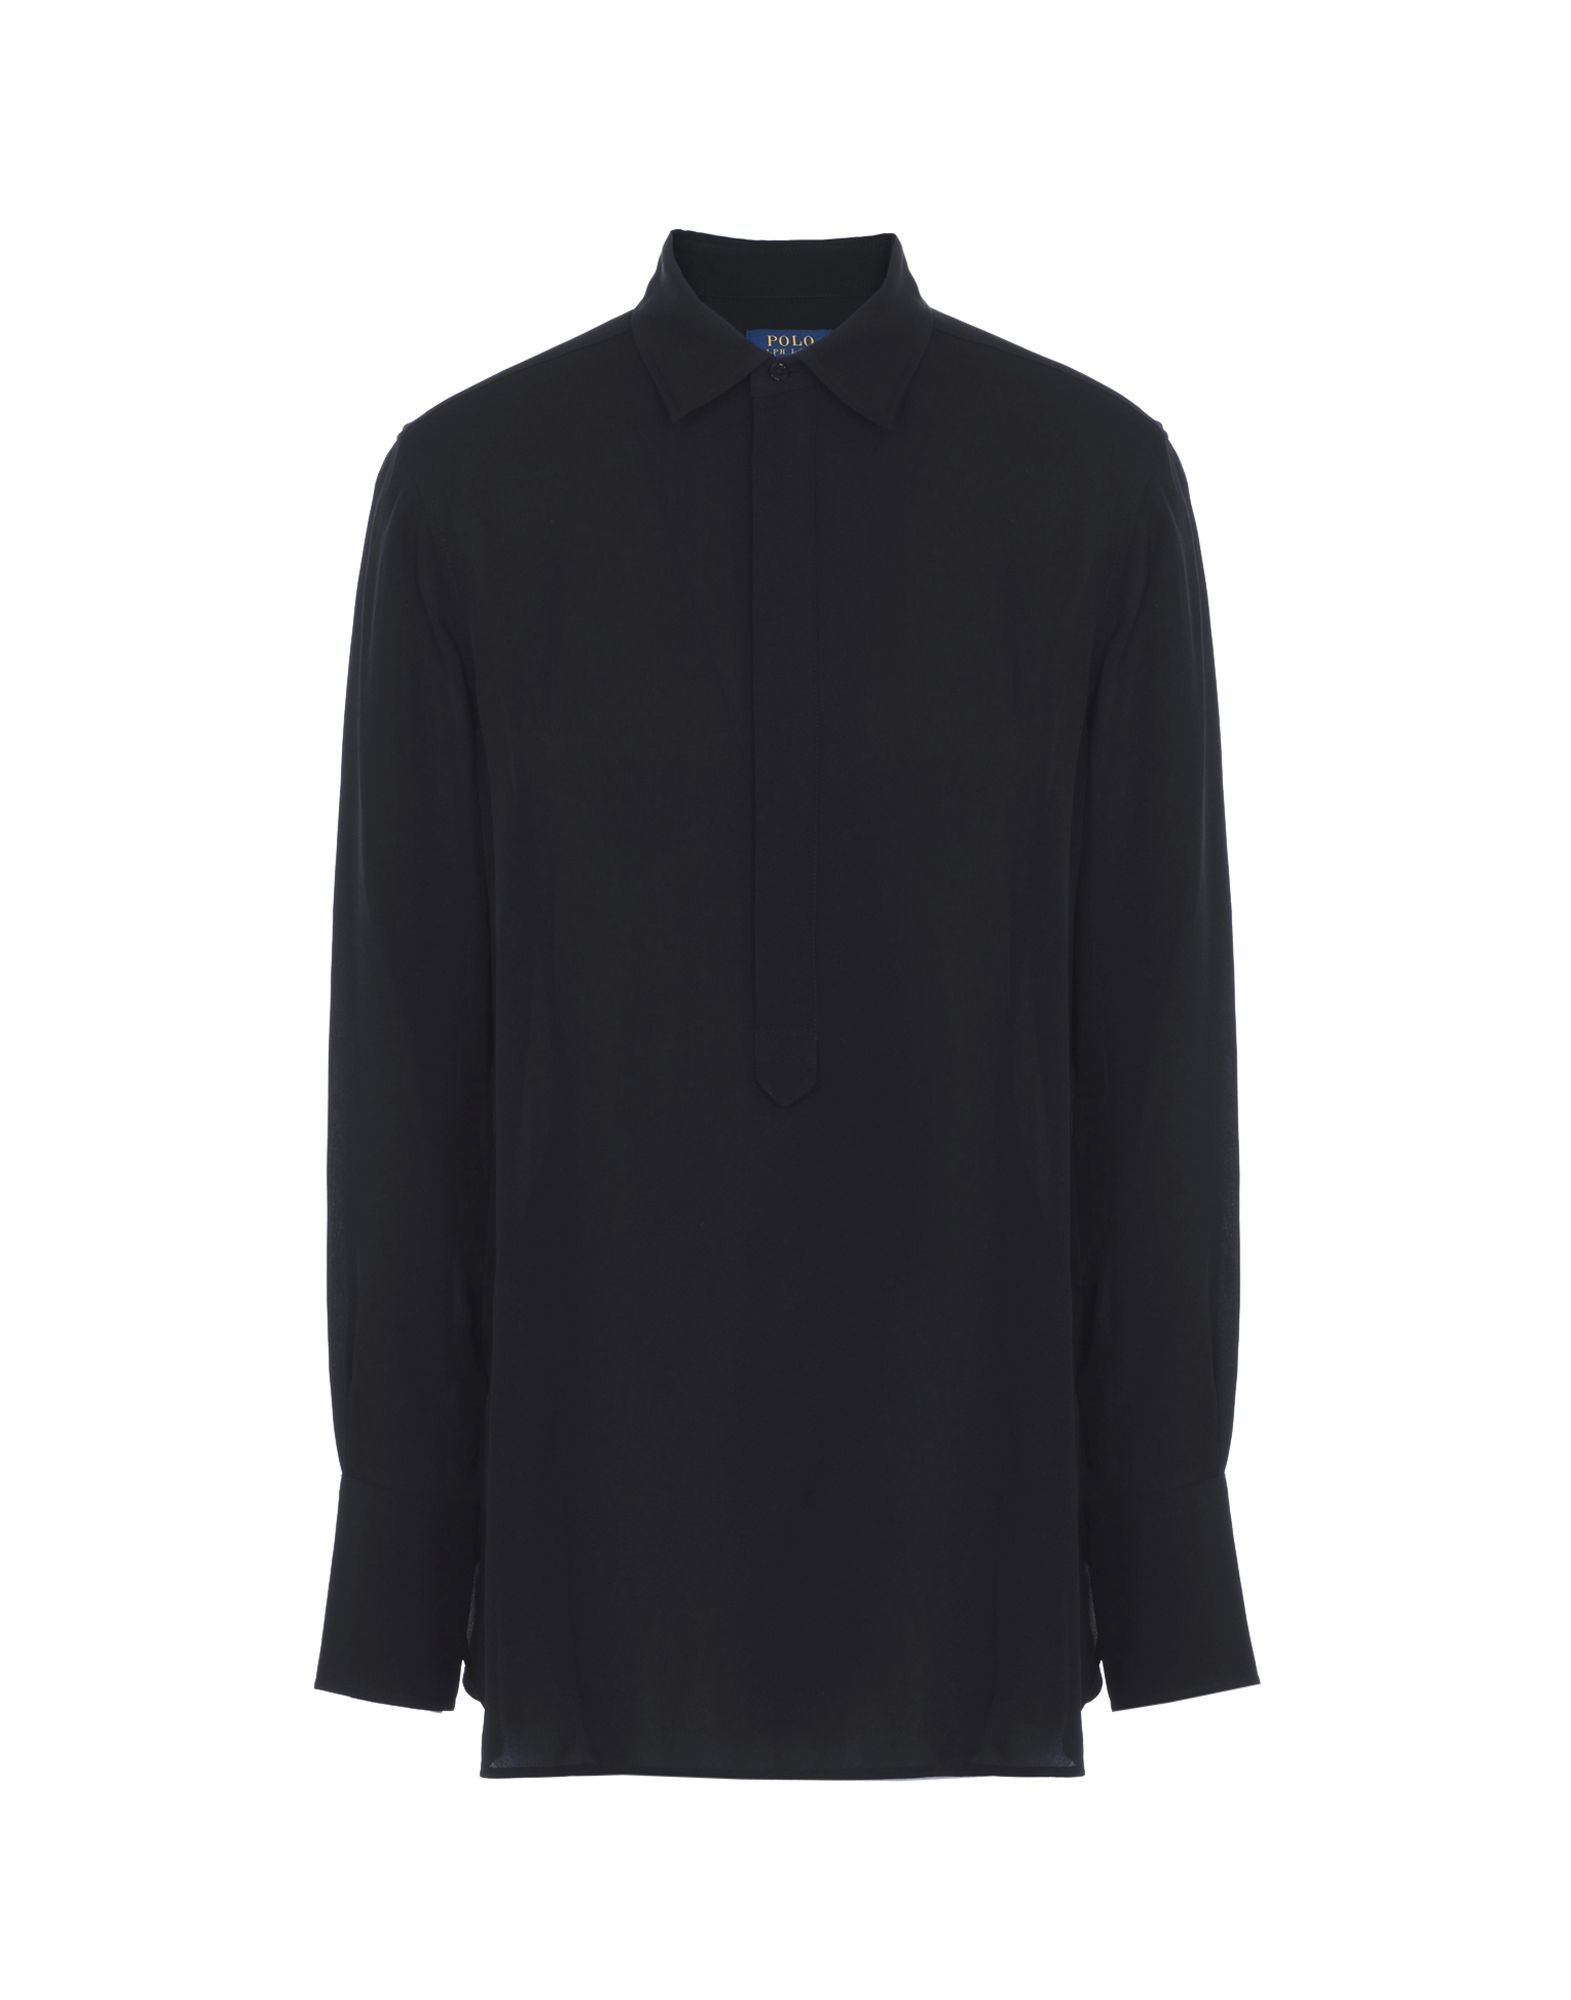 《送料無料》POLO RALPH LAUREN レディース ブラウス ブラック XS シルク 100% Silk Georgette Shirt